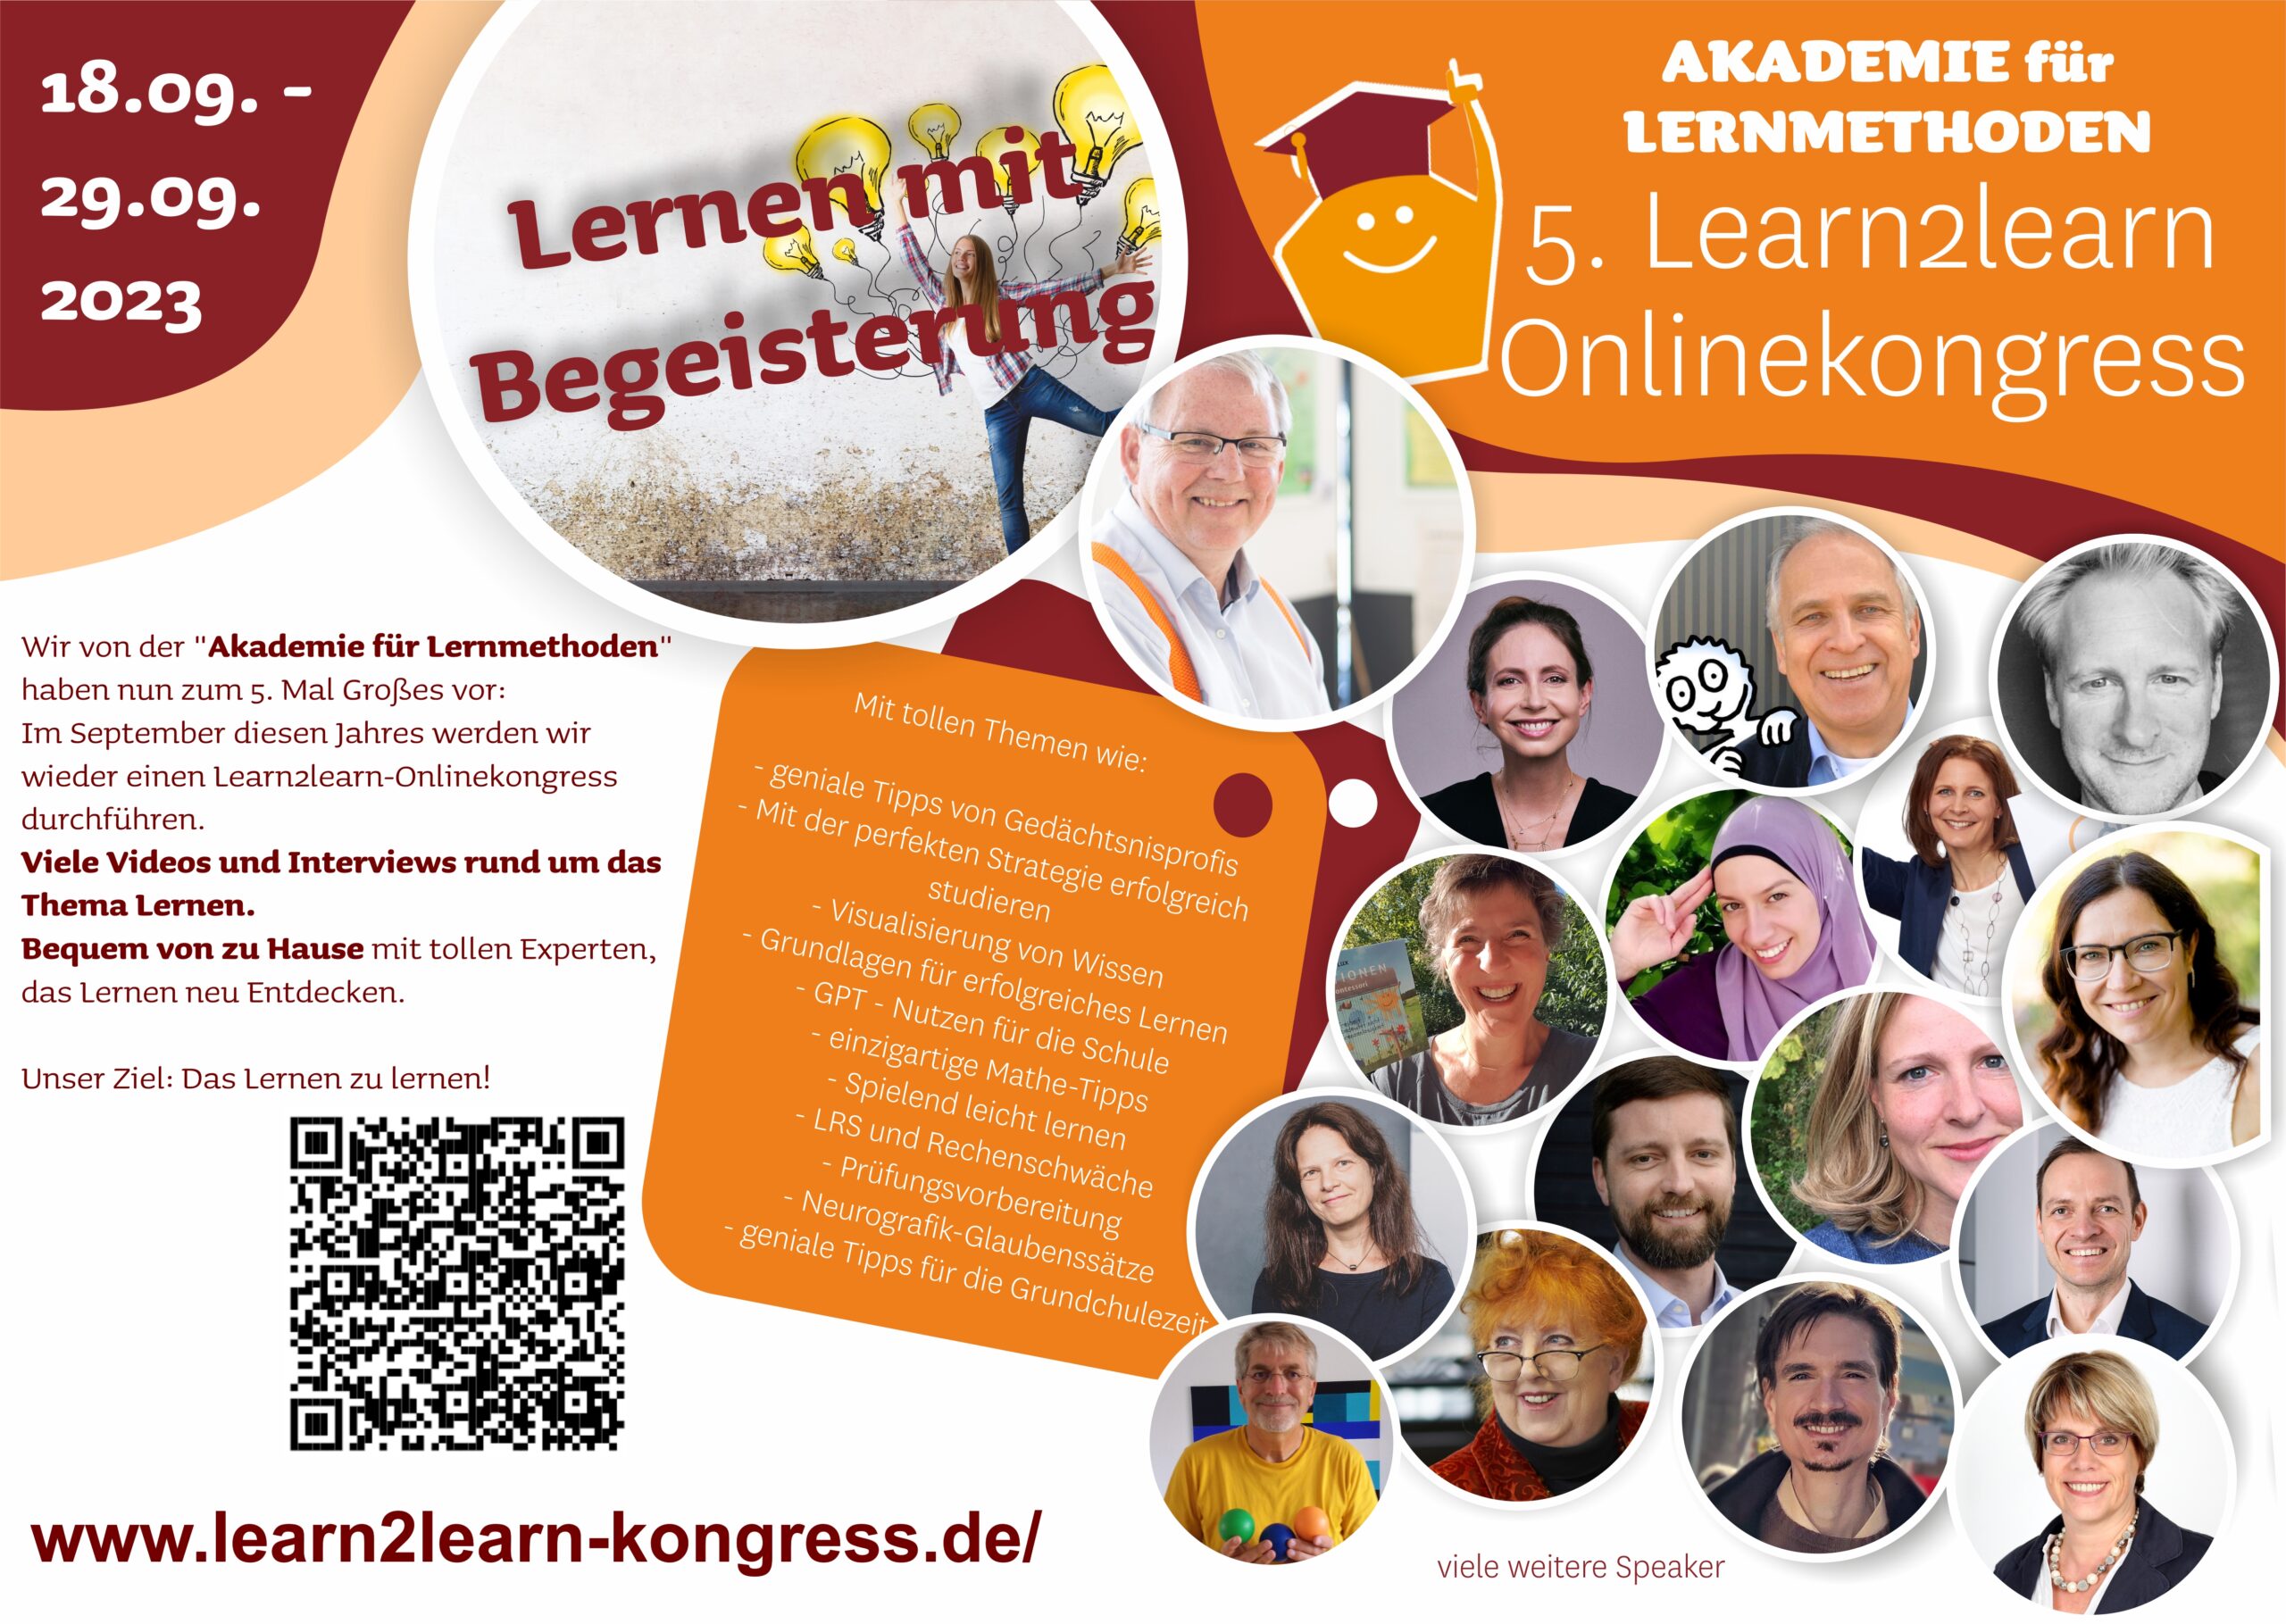 5. Learn2learn Onlinekongress